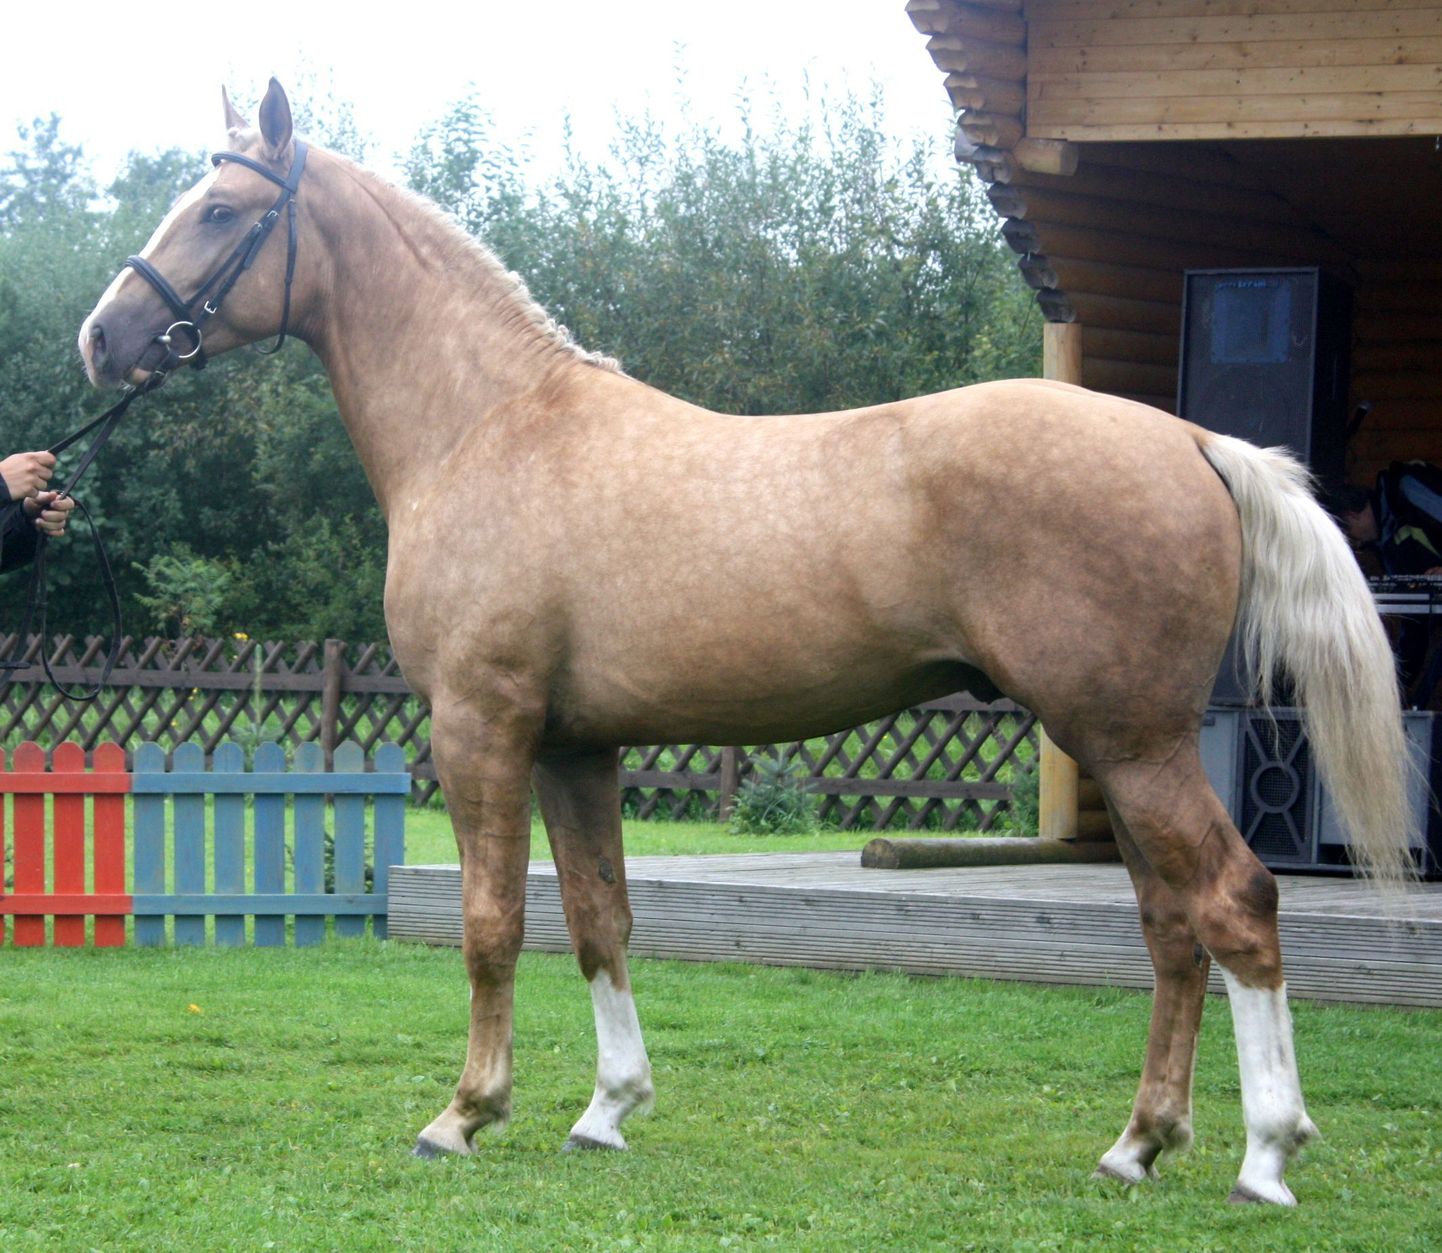 Eesti hobusekasvatajate selts loodab,et maamessi üheks tõmbenumbriks kujuneb 2010. aastal parimaks tori hobuseks valitud täkk Alderi eksponeerimine.